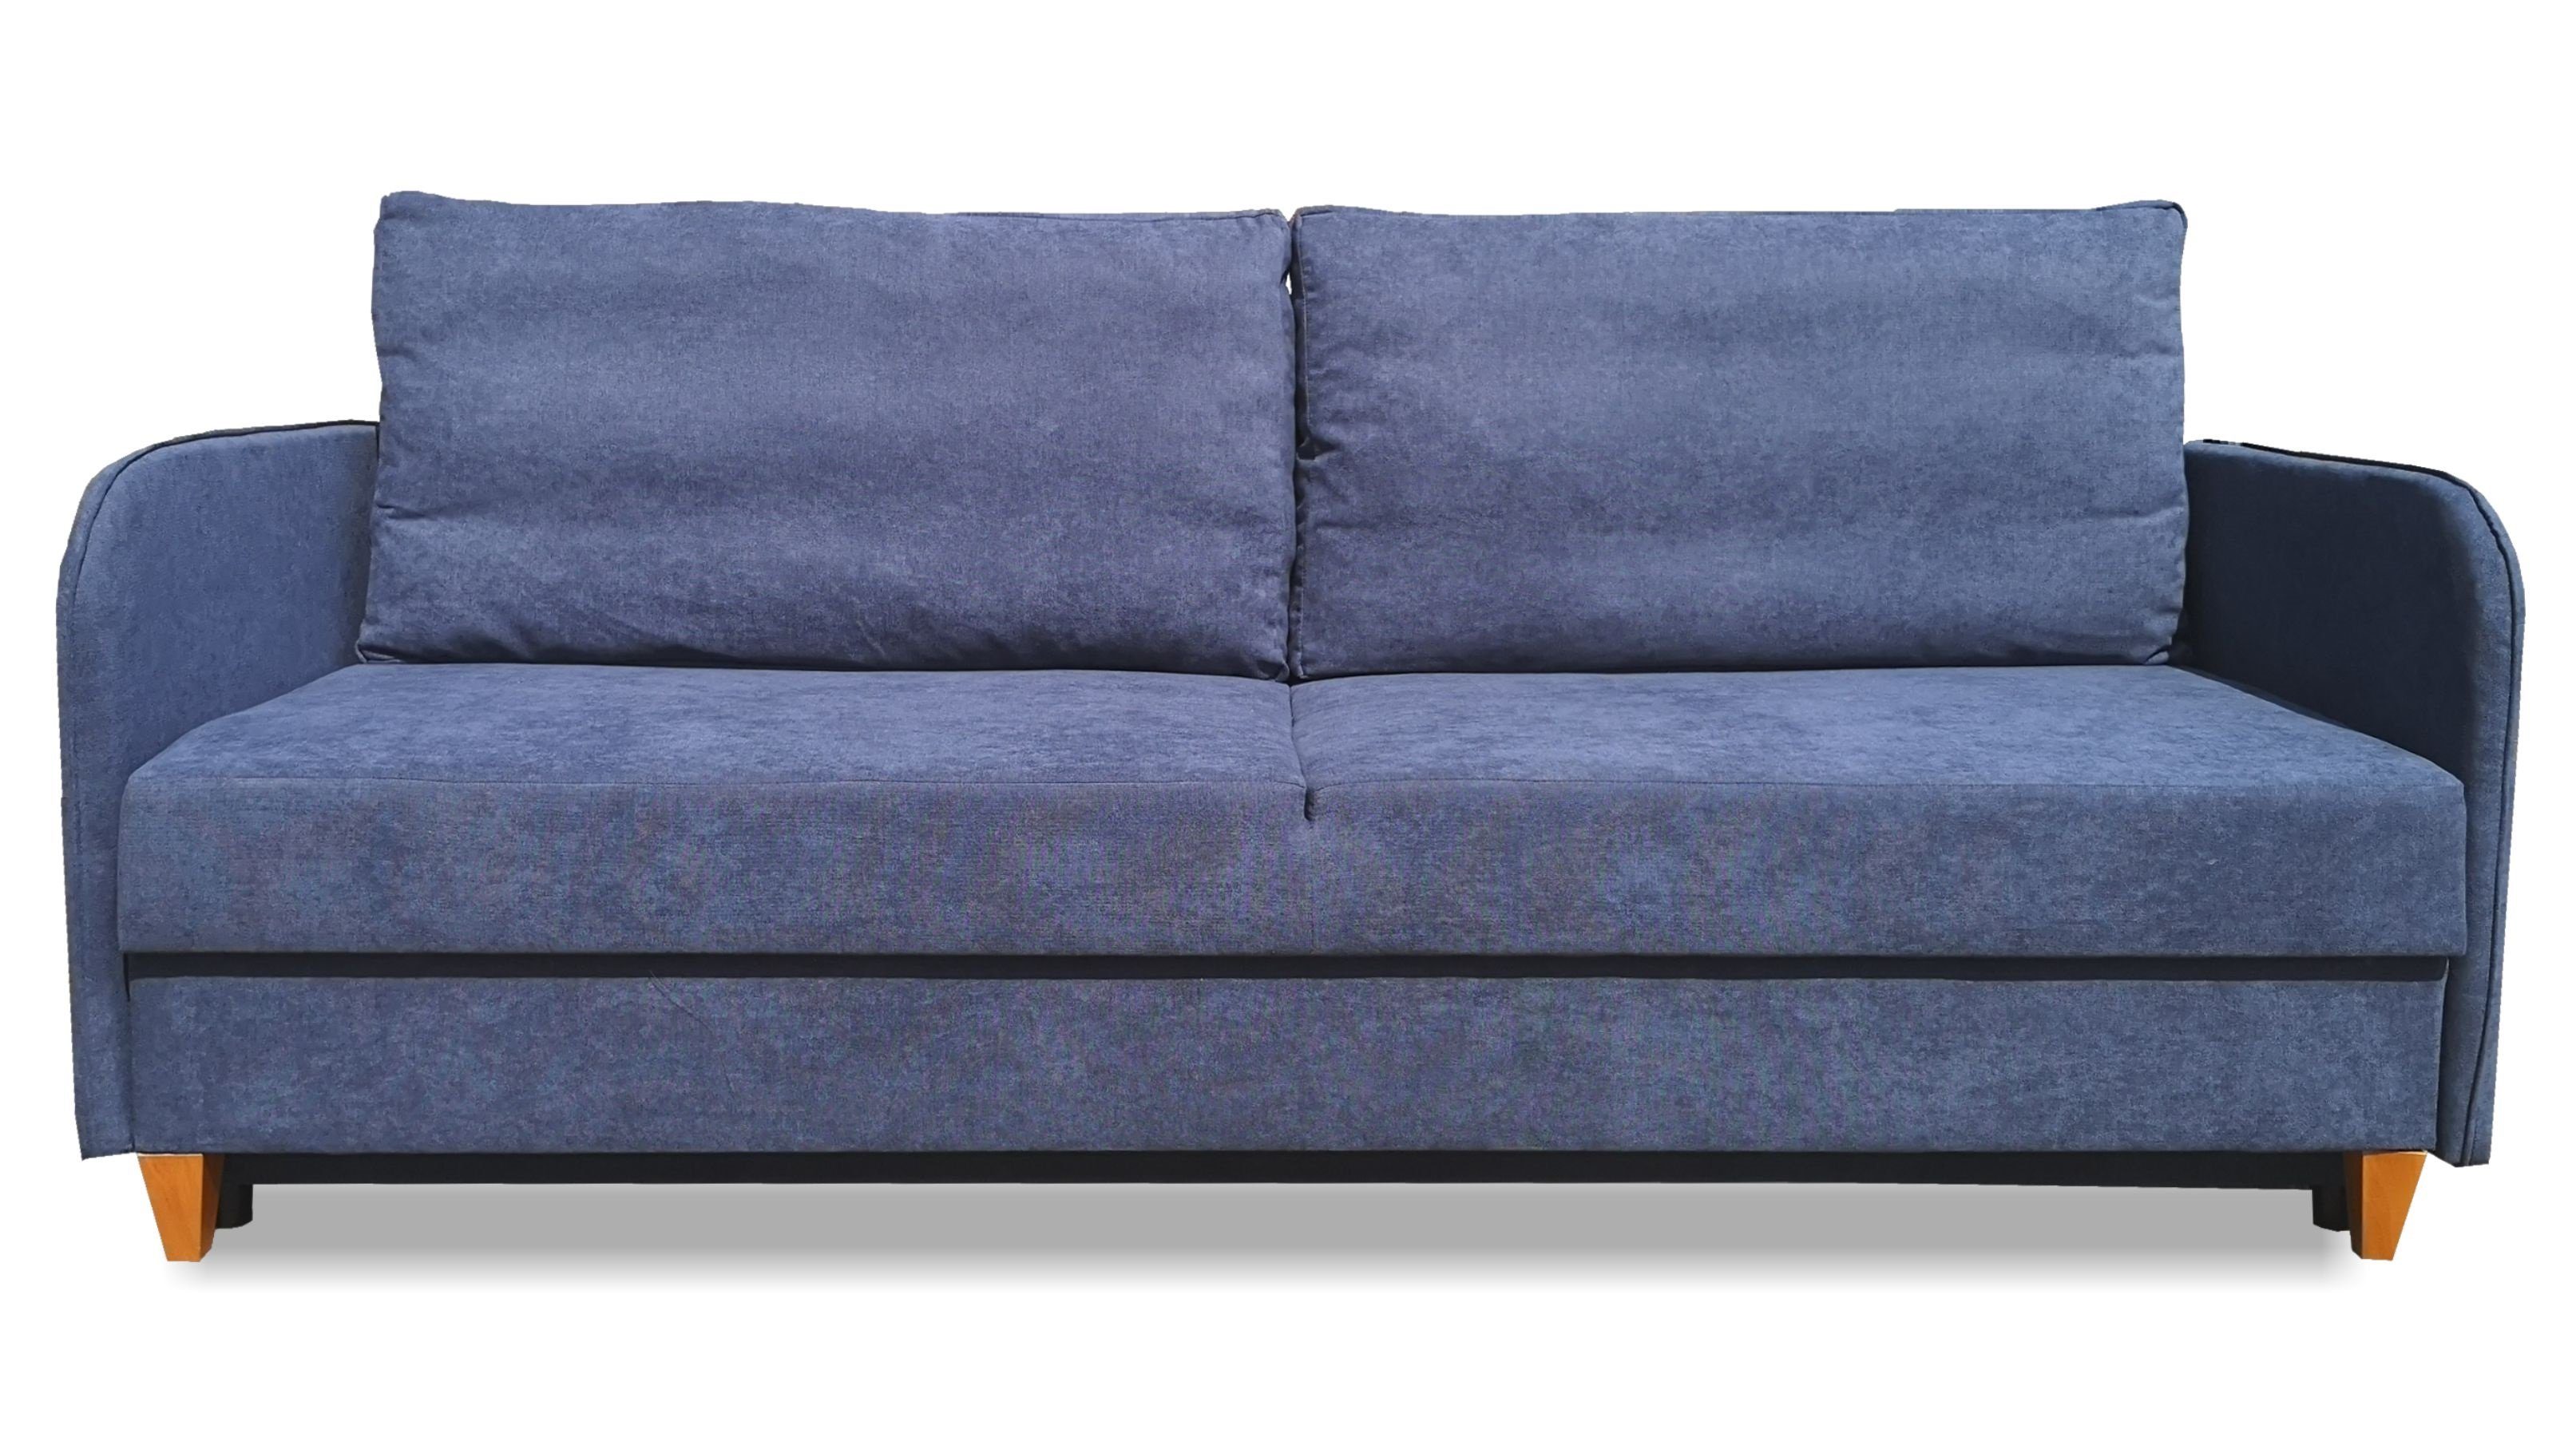 Siblo 3-Sitzer Ausziehbares Dreisitziges Sofa Pablo mit Schlaffunktion - Bettzeugbehälter - Dreisitzer-Sofa Blau